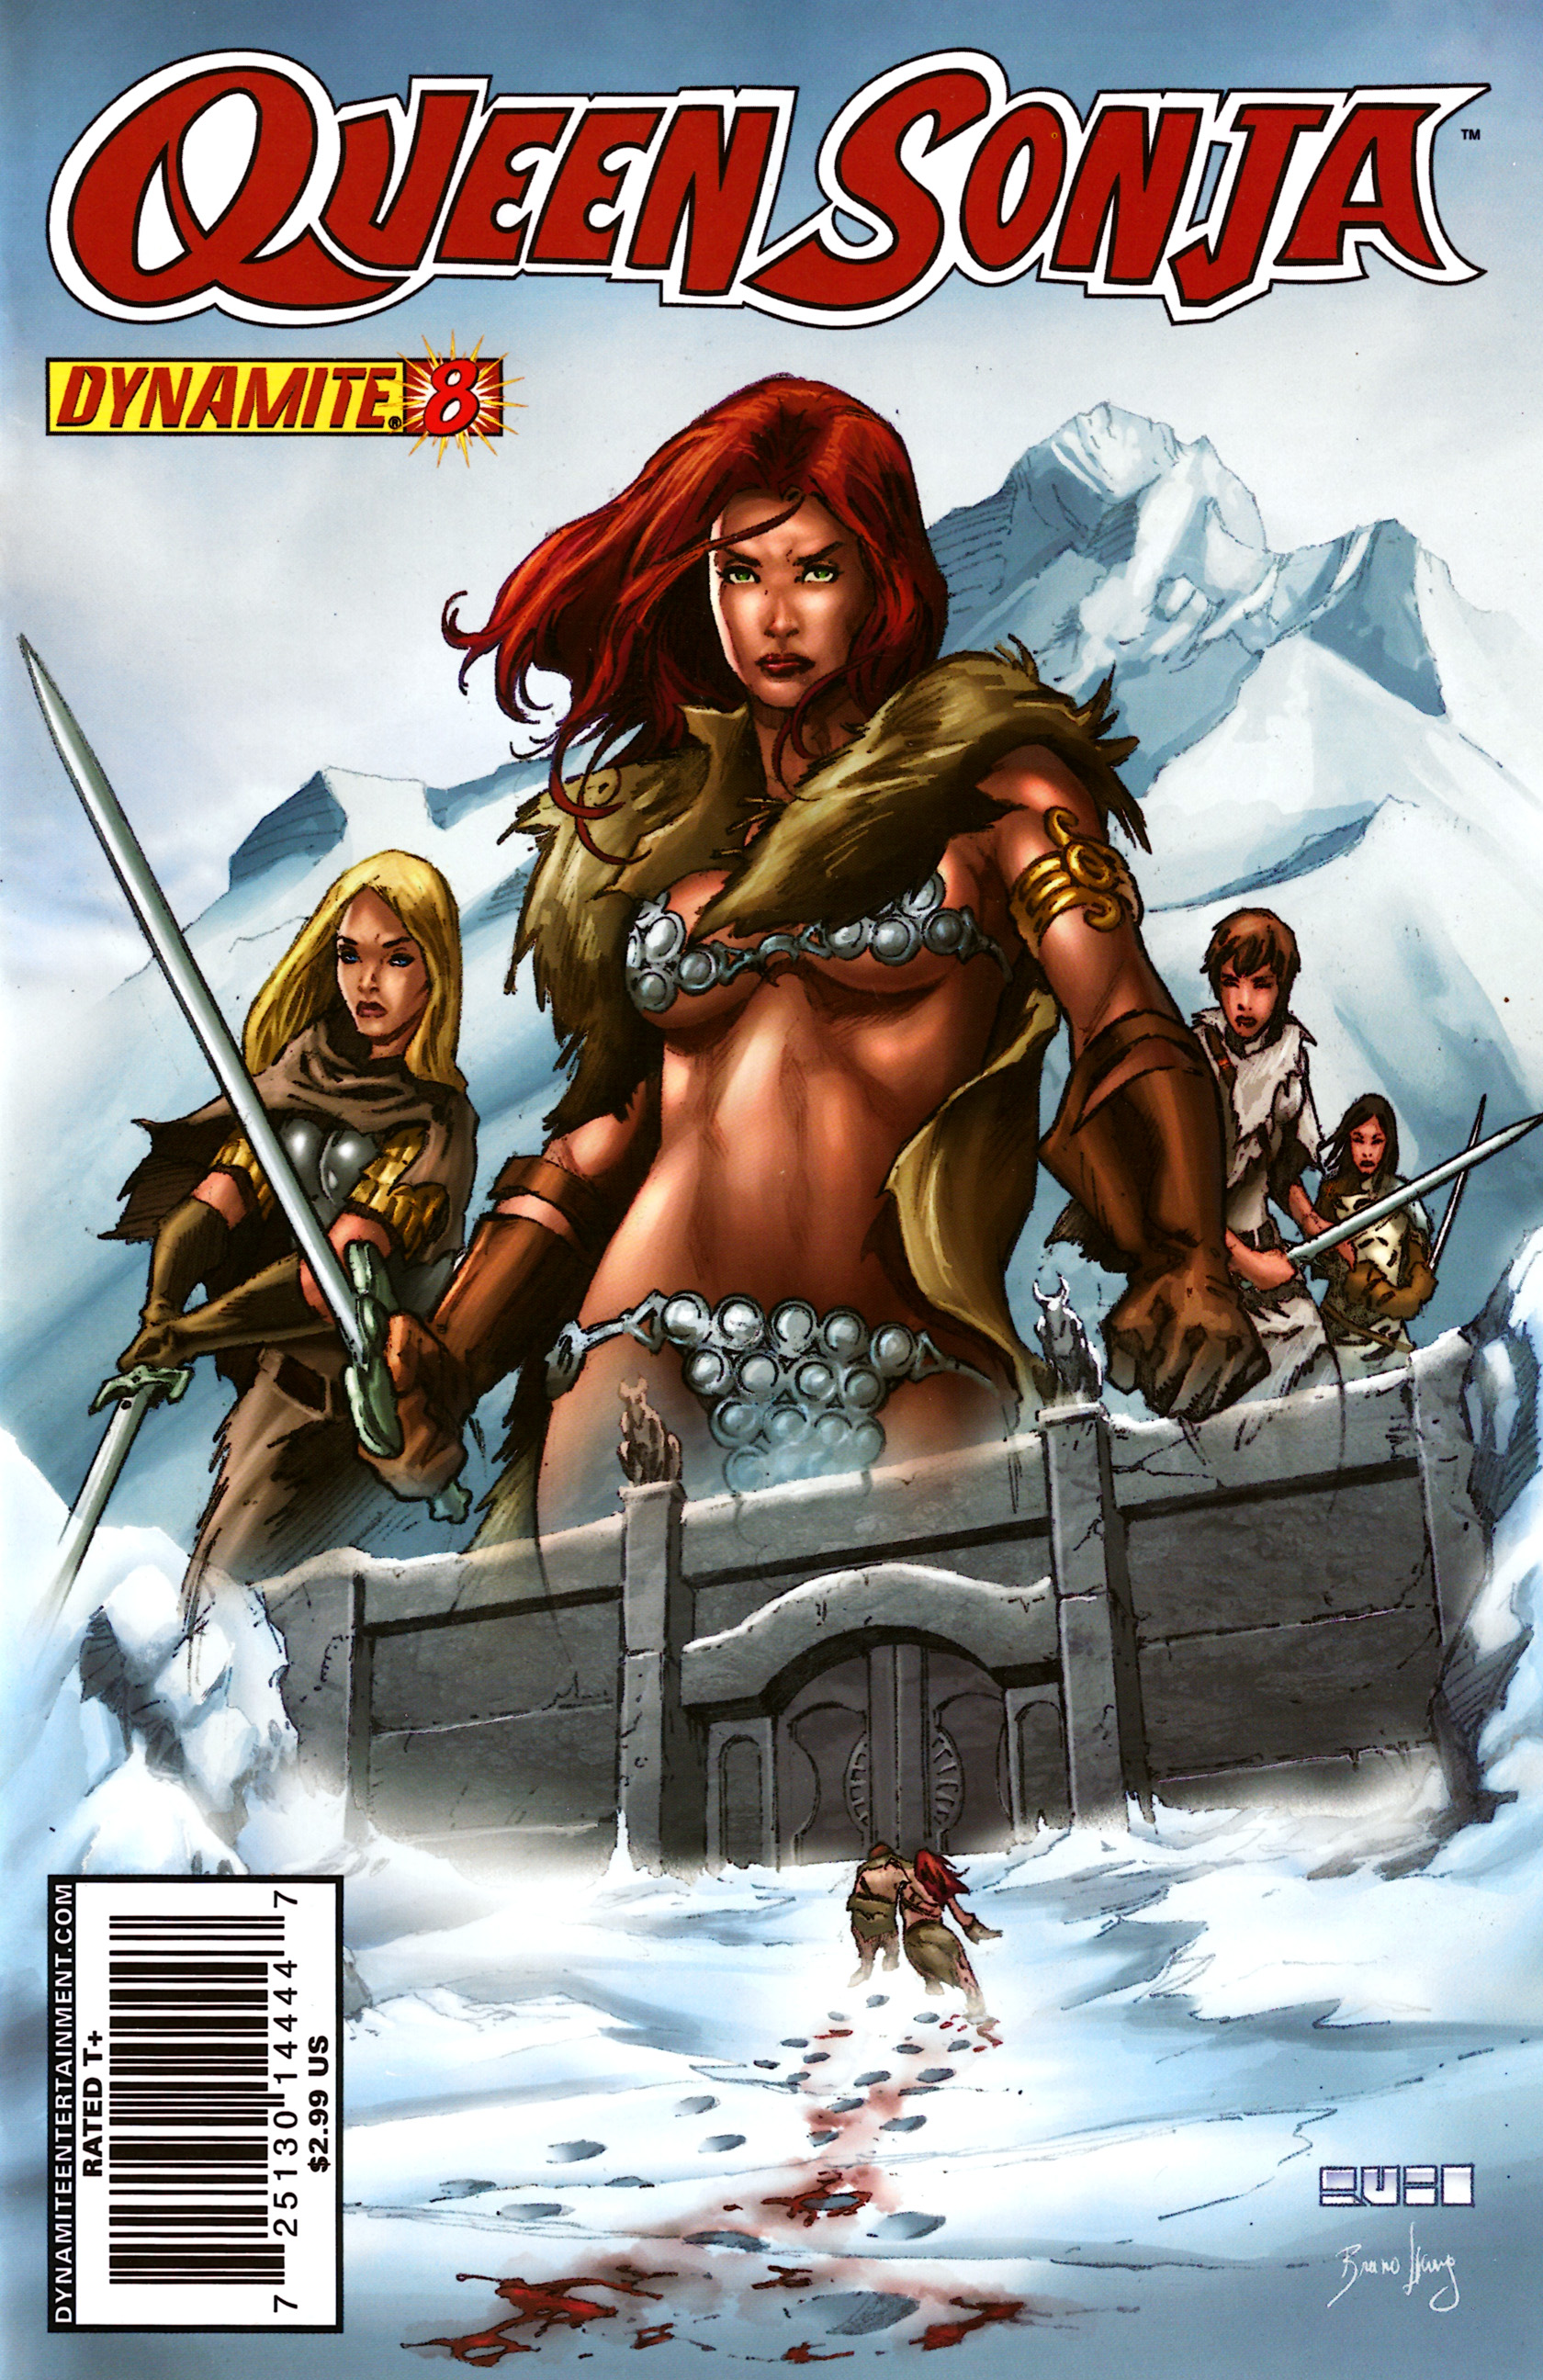 Read online Queen Sonja comic -  Issue #8 - 2